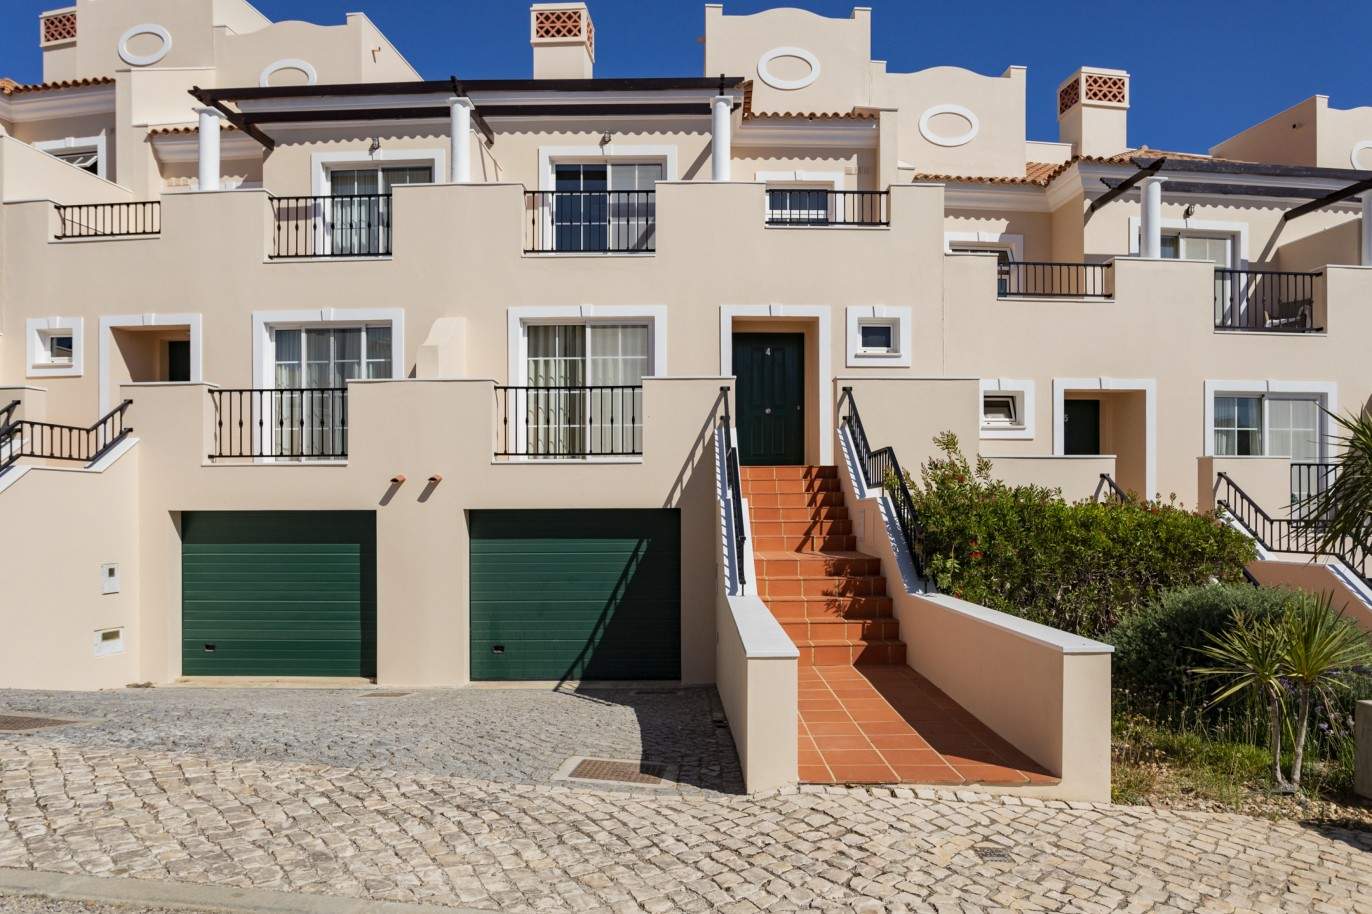 Villa adosada de 4 dormitorios en venta en Quarteira, Algarve_212109